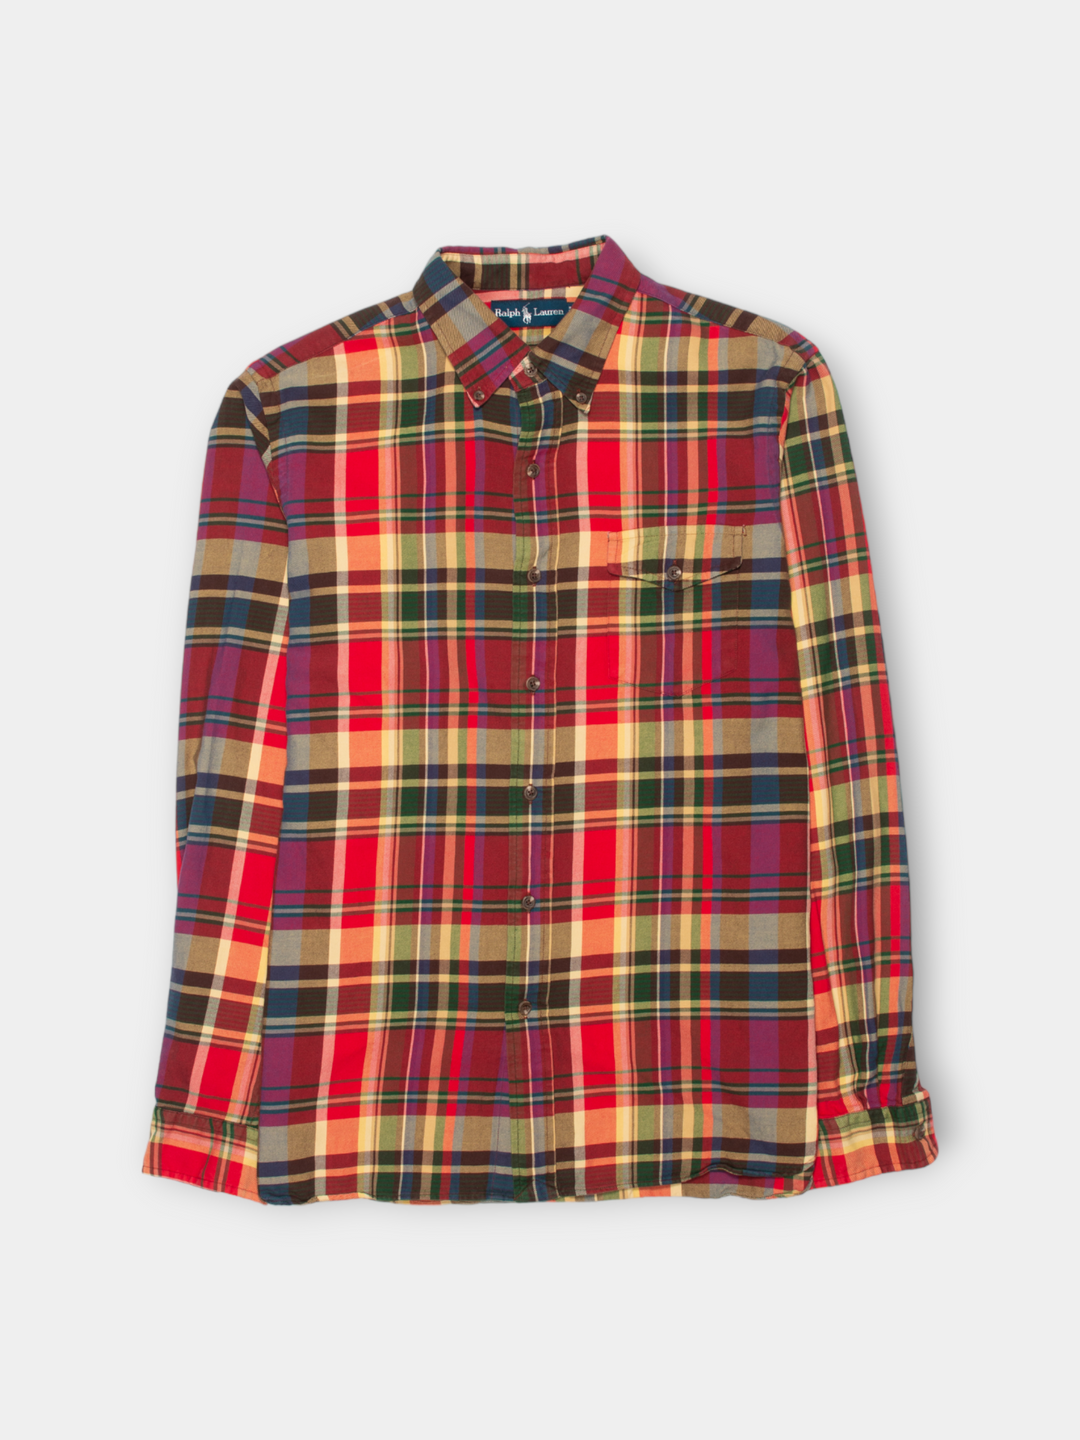 90s Ralph Lauren Heavy Plaid Shirt (L)